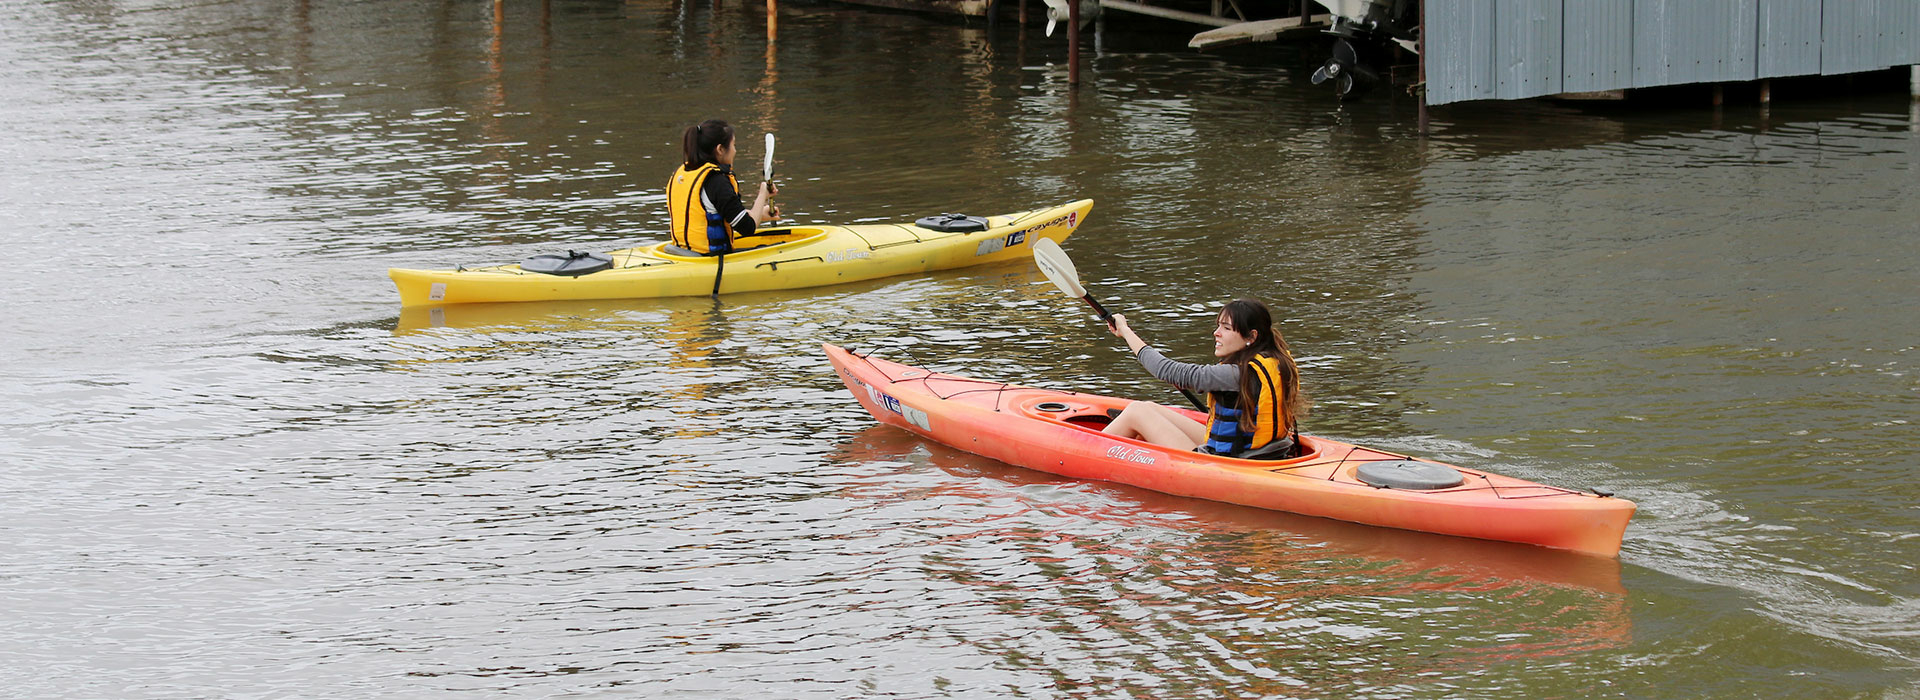 students kayaking lake